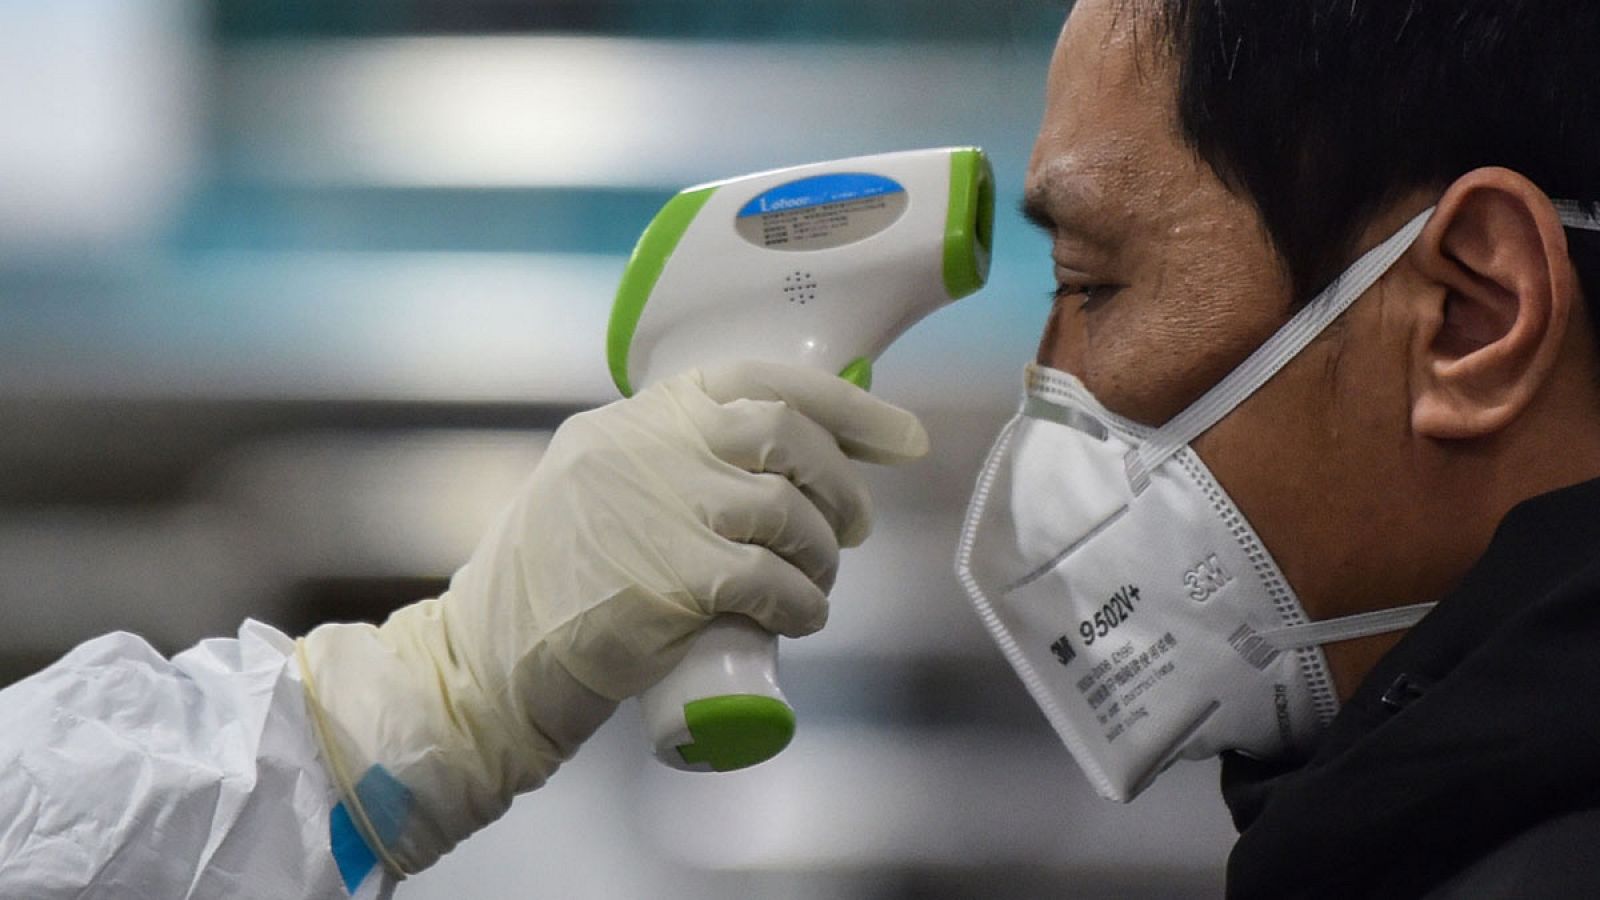 La Organización Mundial de la Salud (OMS) ha declarado este jueves la emergencia sanitaria internacional ante la rápida expansión del coronavirus de Wuhan. La medida prevé un aumento de la coordinación entre todas las redes sanitarias nacionales en e